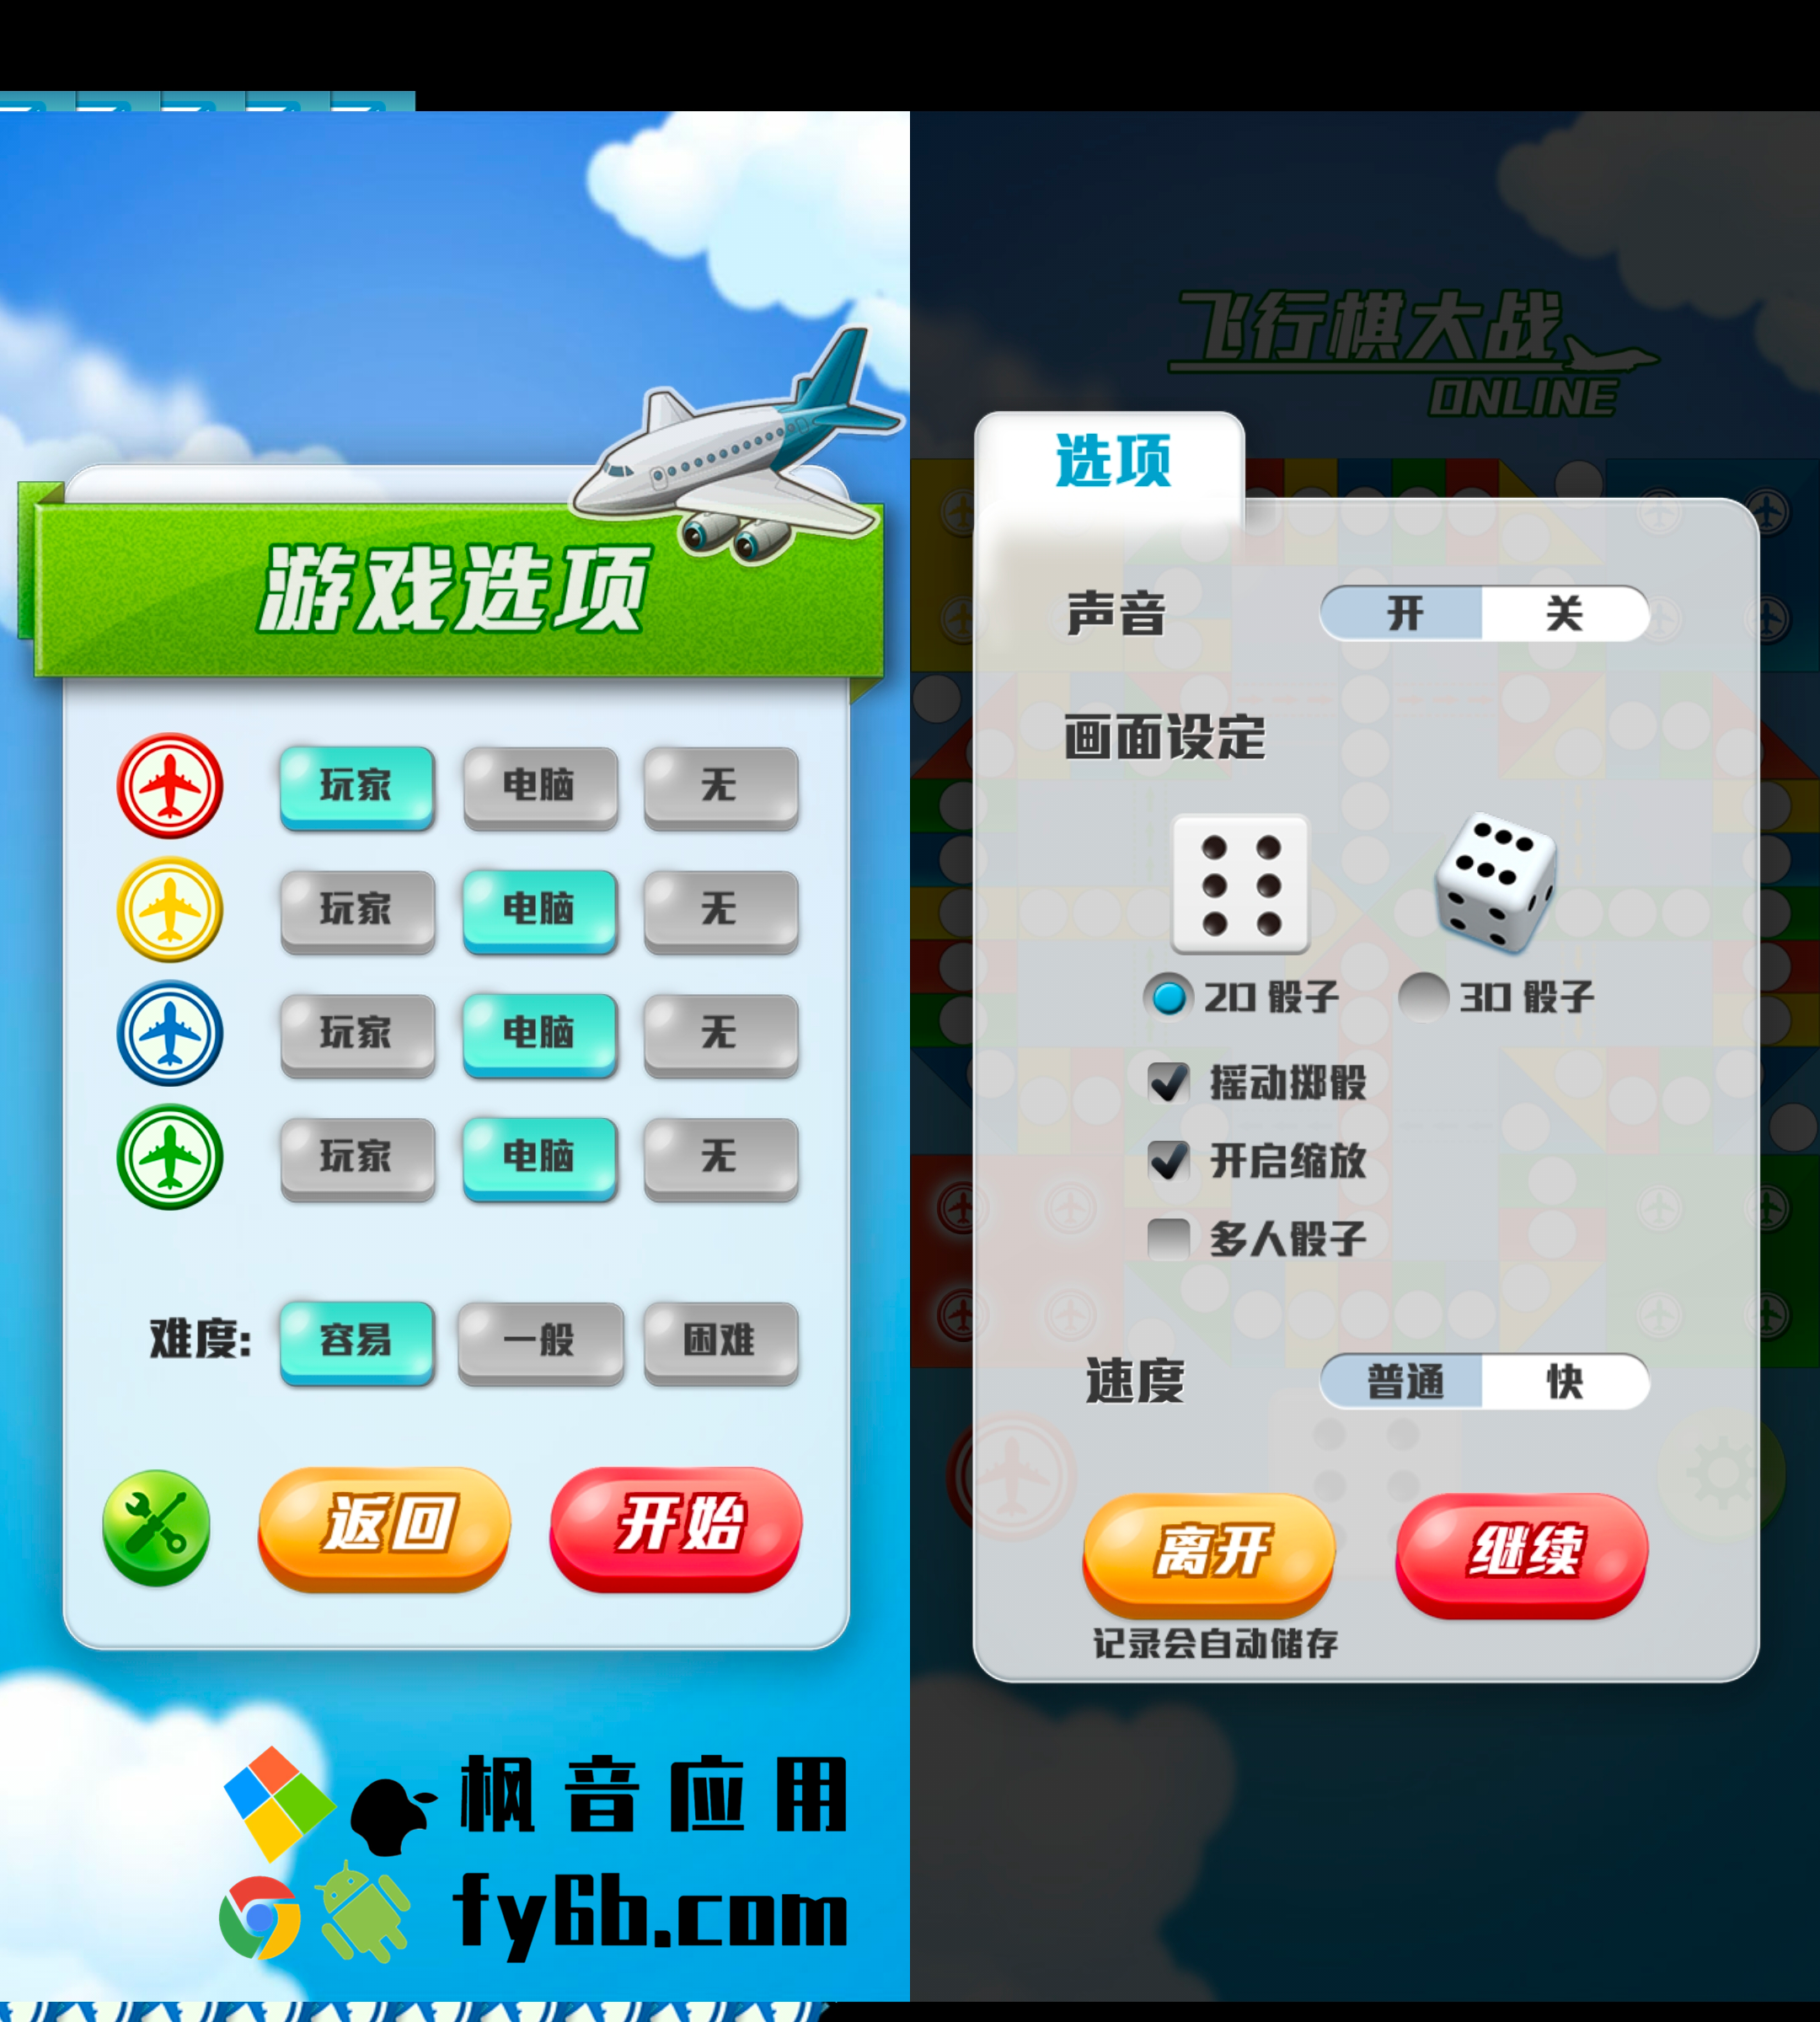 Android 飞行棋大战 Online_2.3.2 绿色版